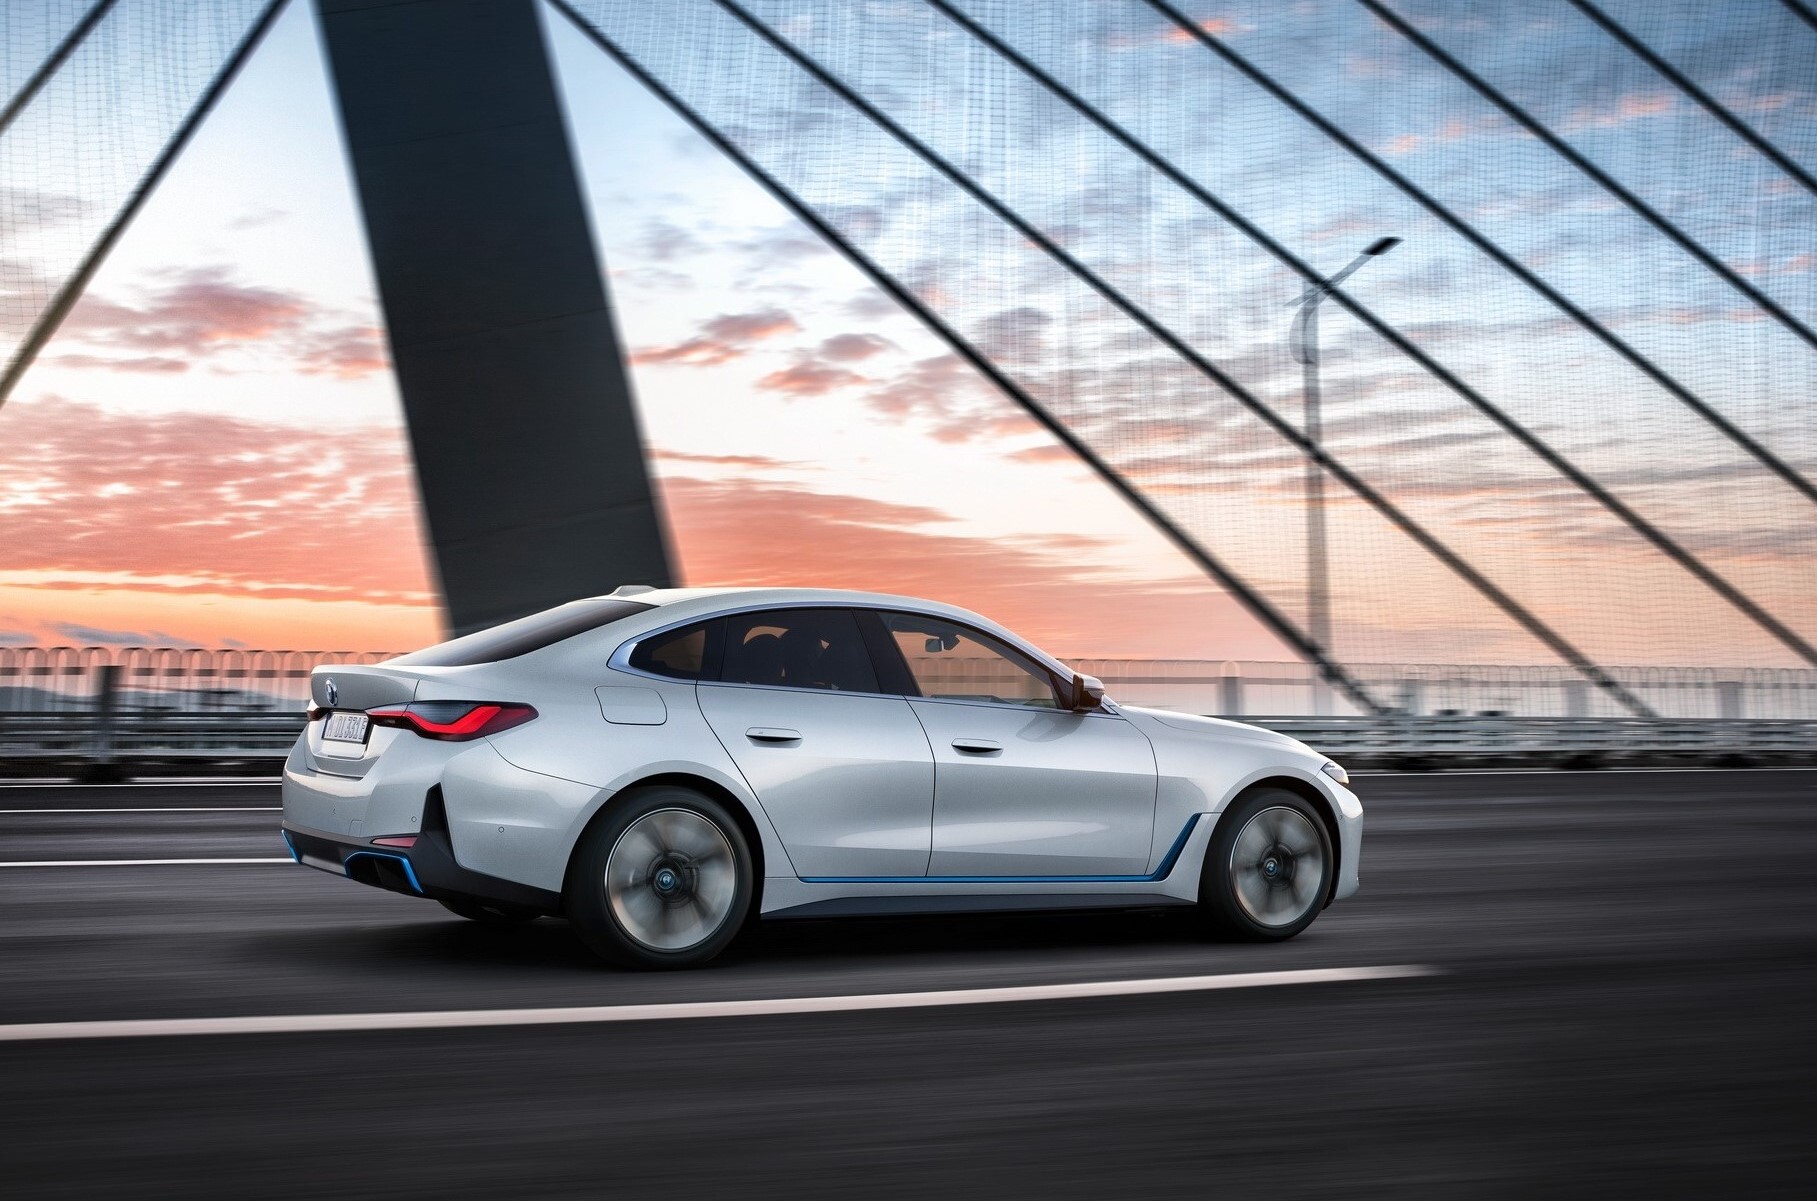 BMW раскрыла характеристики и цены электрического i4